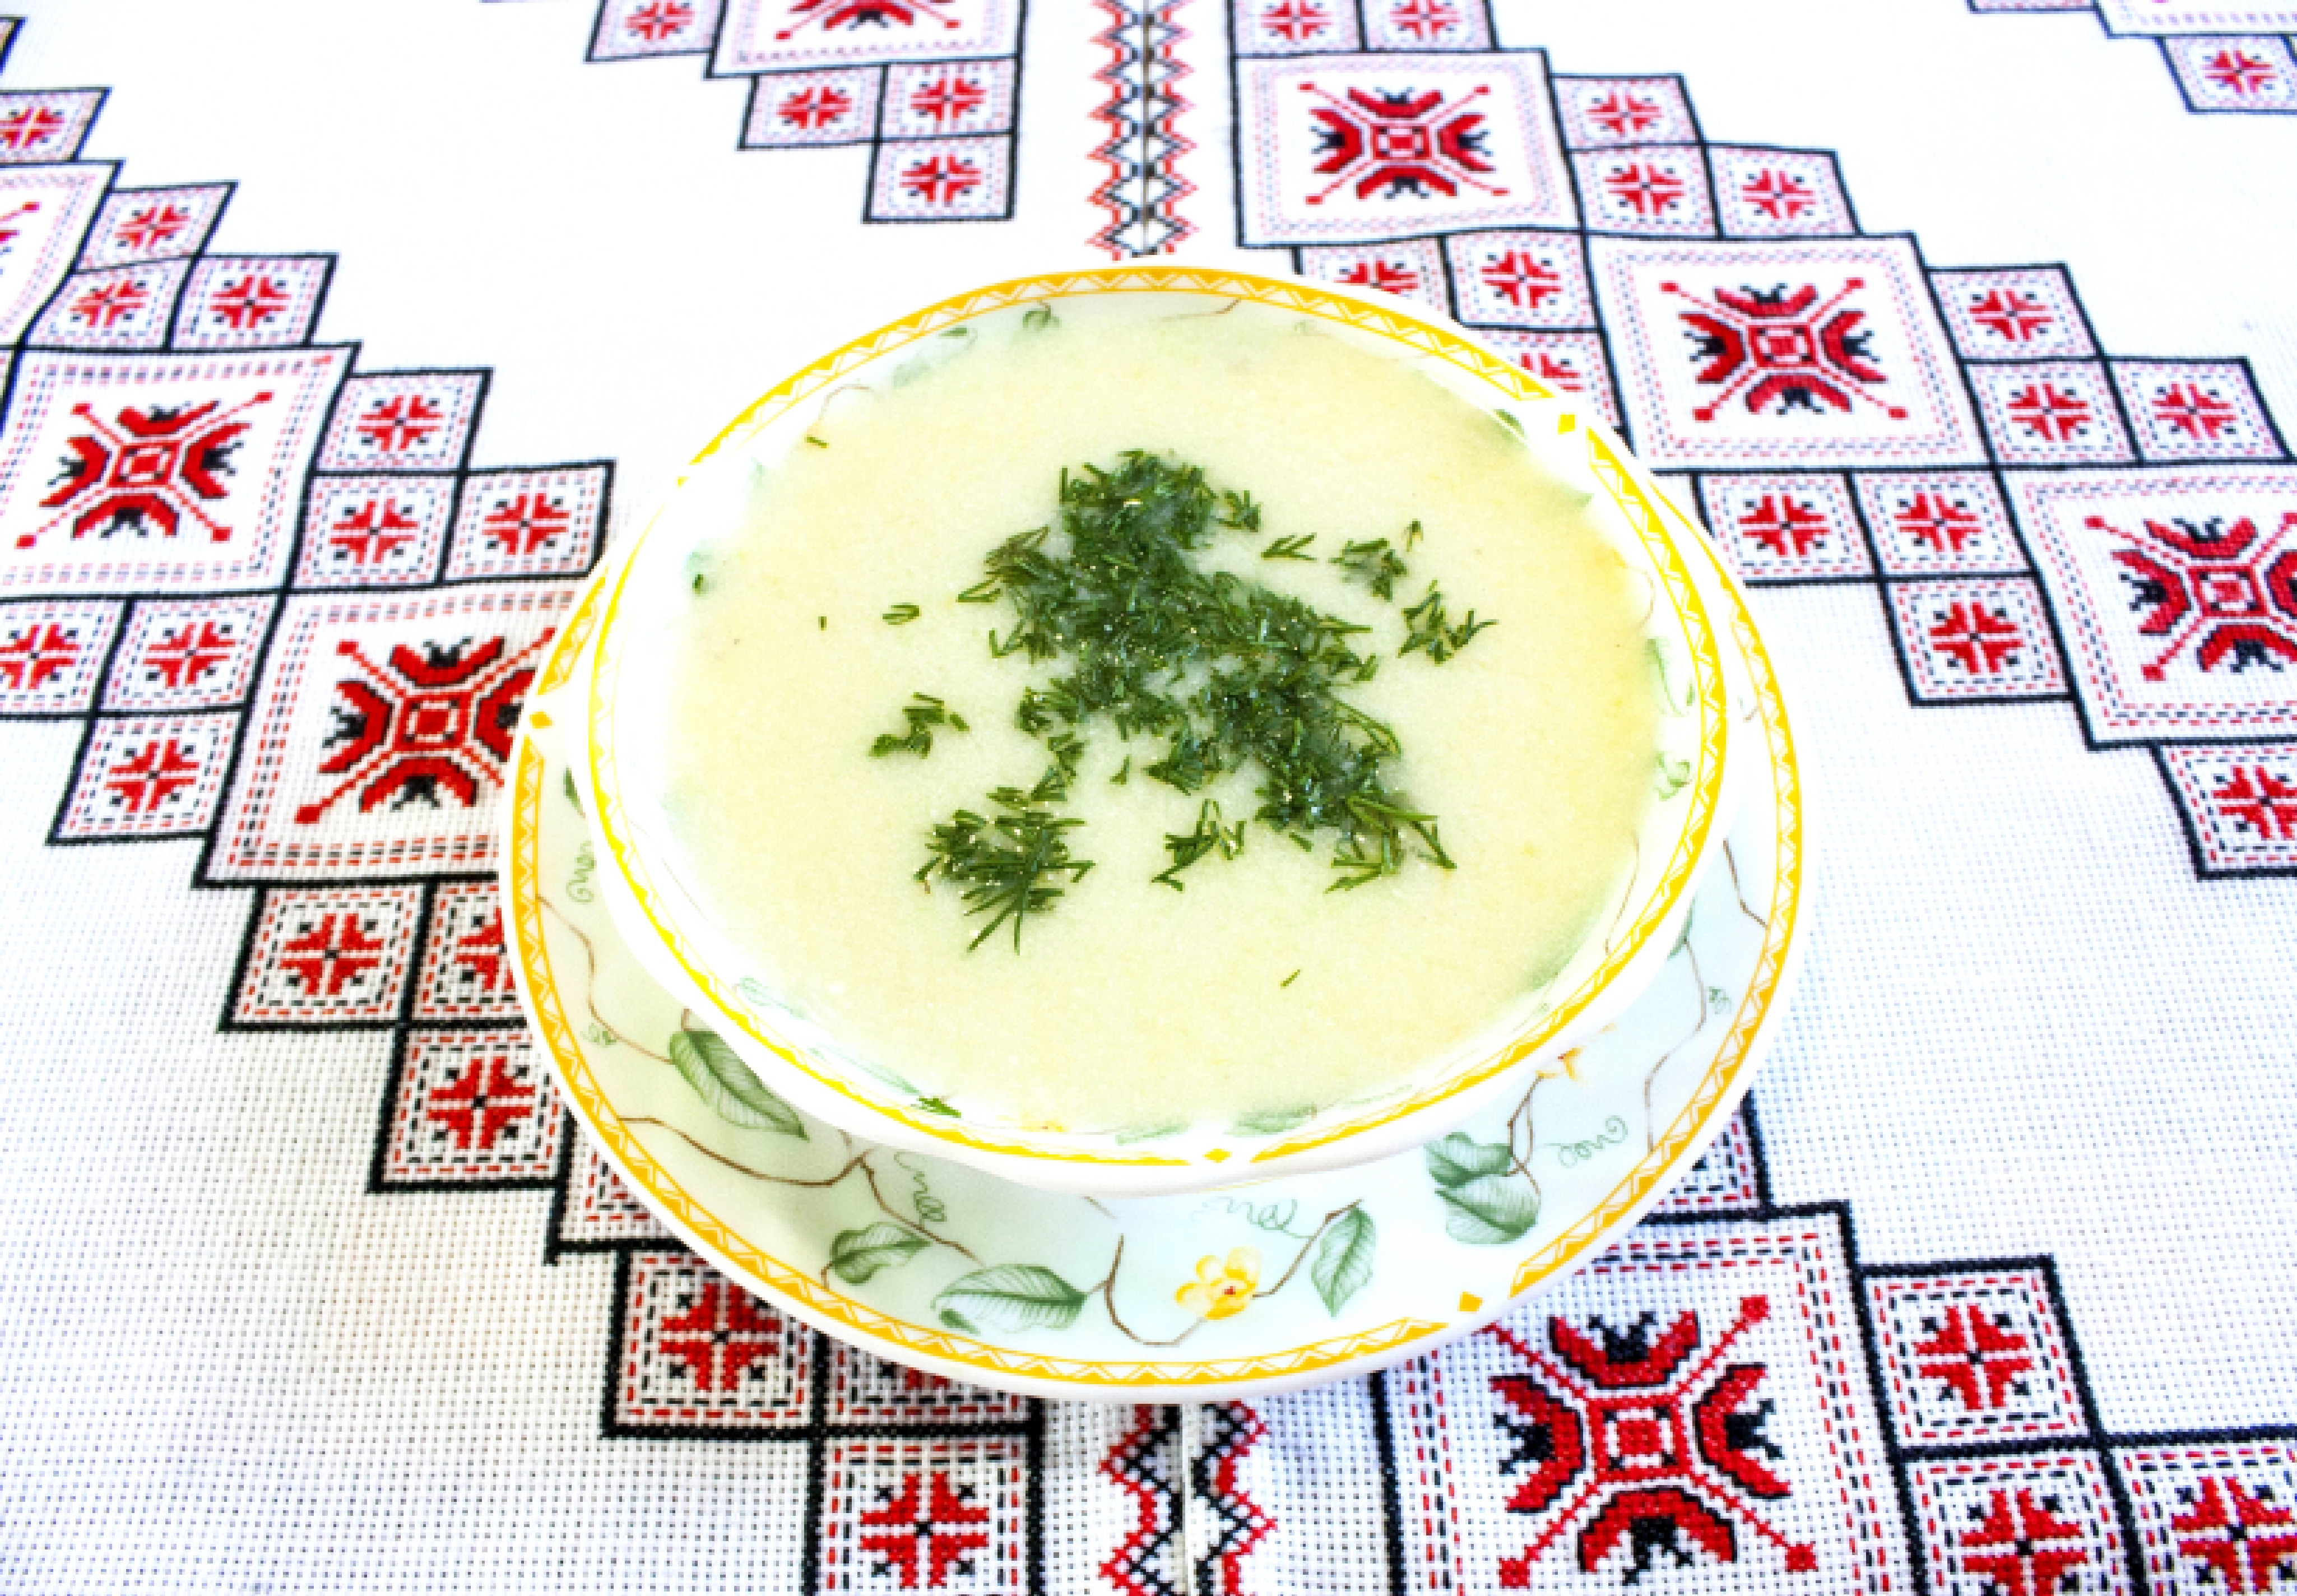 Суп пюре рецепт с луком пореем Как приготовить суп пюре Лук порей рецепты Цибуля порей рецепт супу 